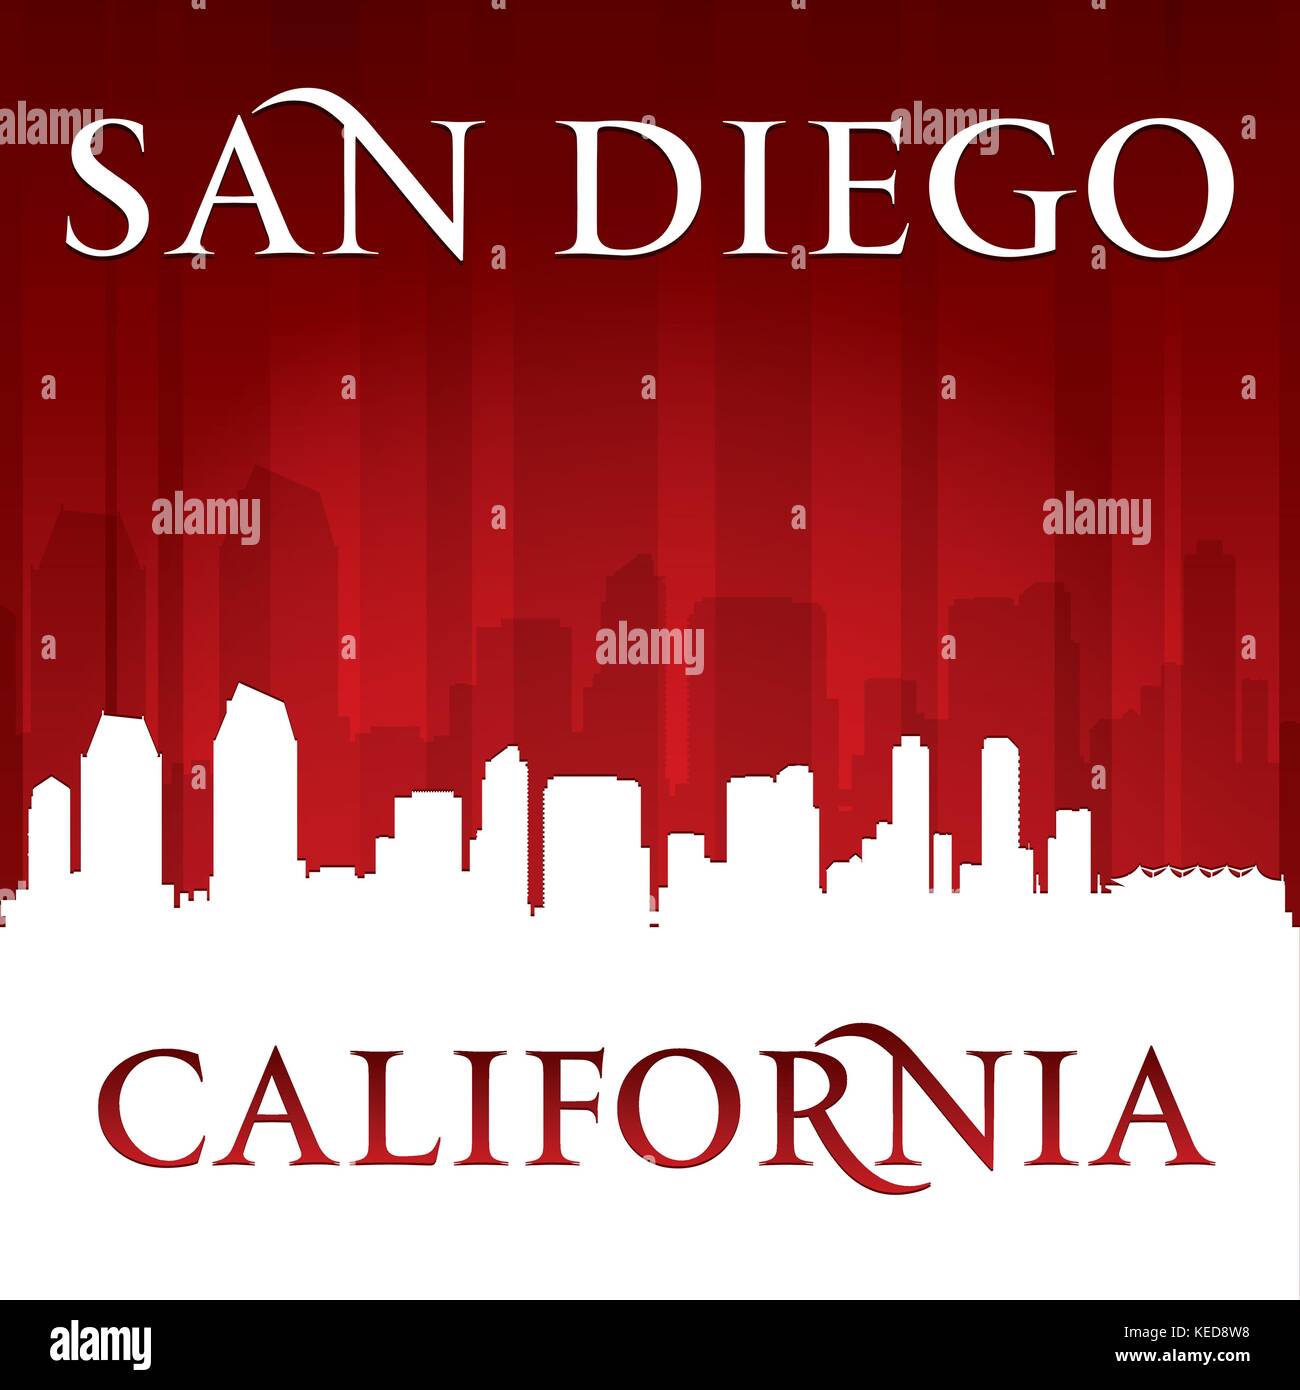 San Diego California city skyline silhouette. Vector illustration Stock Vector